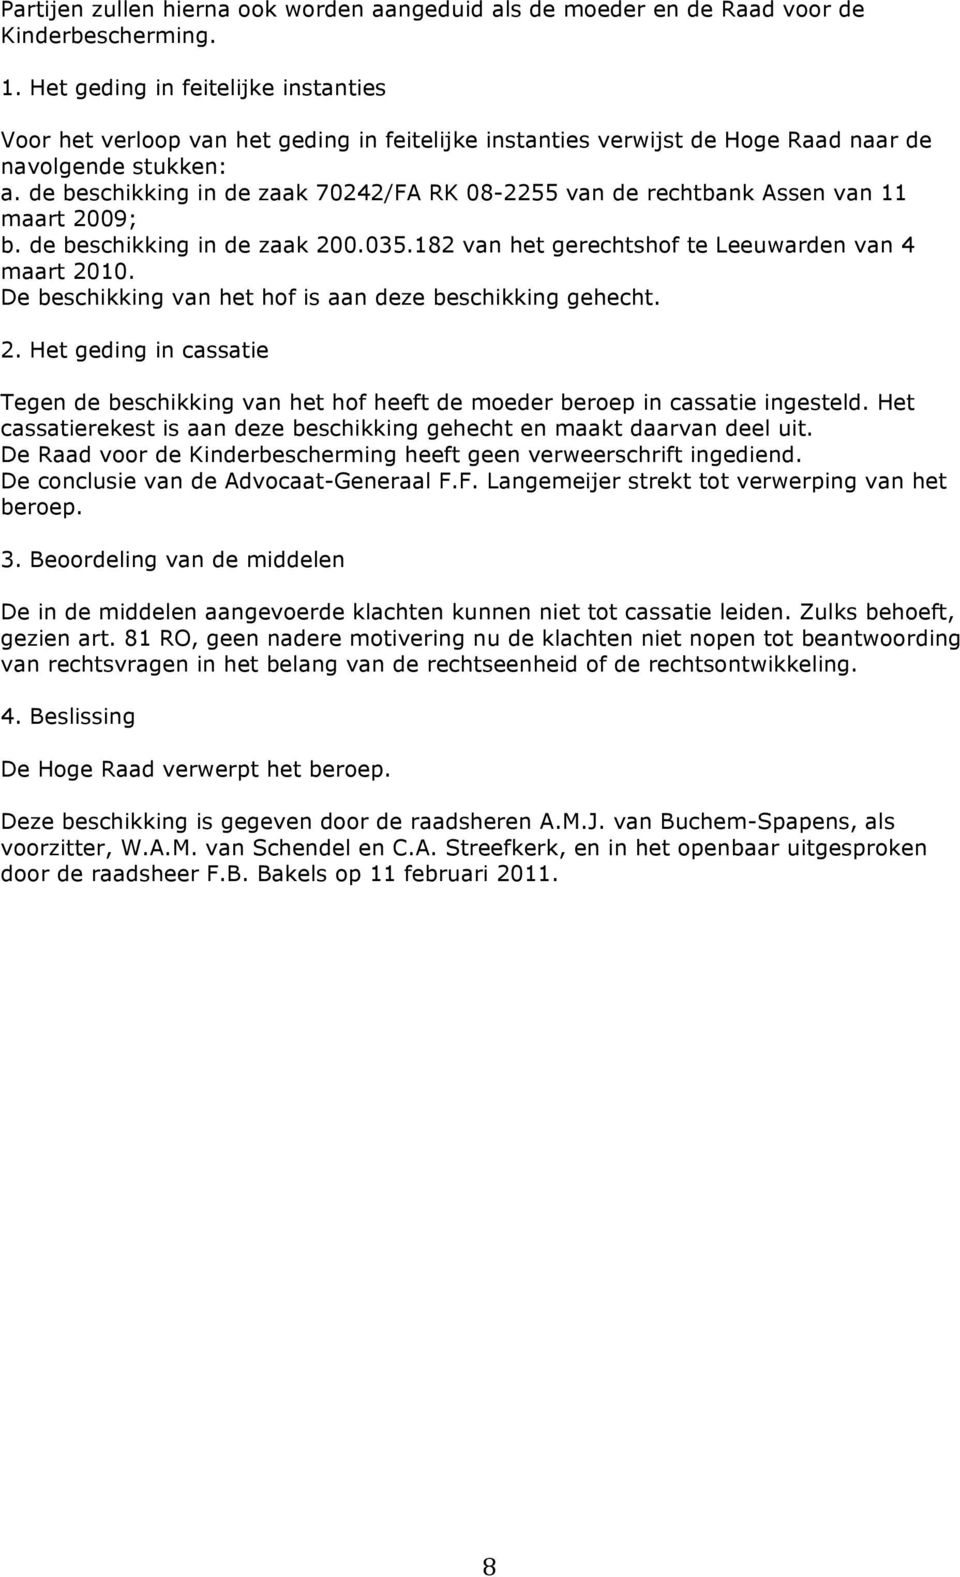 de beschikking in de zaak 70242/FA RK 08-2255 van de rechtbank Assen van 11 maart 2009; b. de beschikking in de zaak 200.035.182 van het gerechtshof te Leeuwarden van 4 maart 2010.